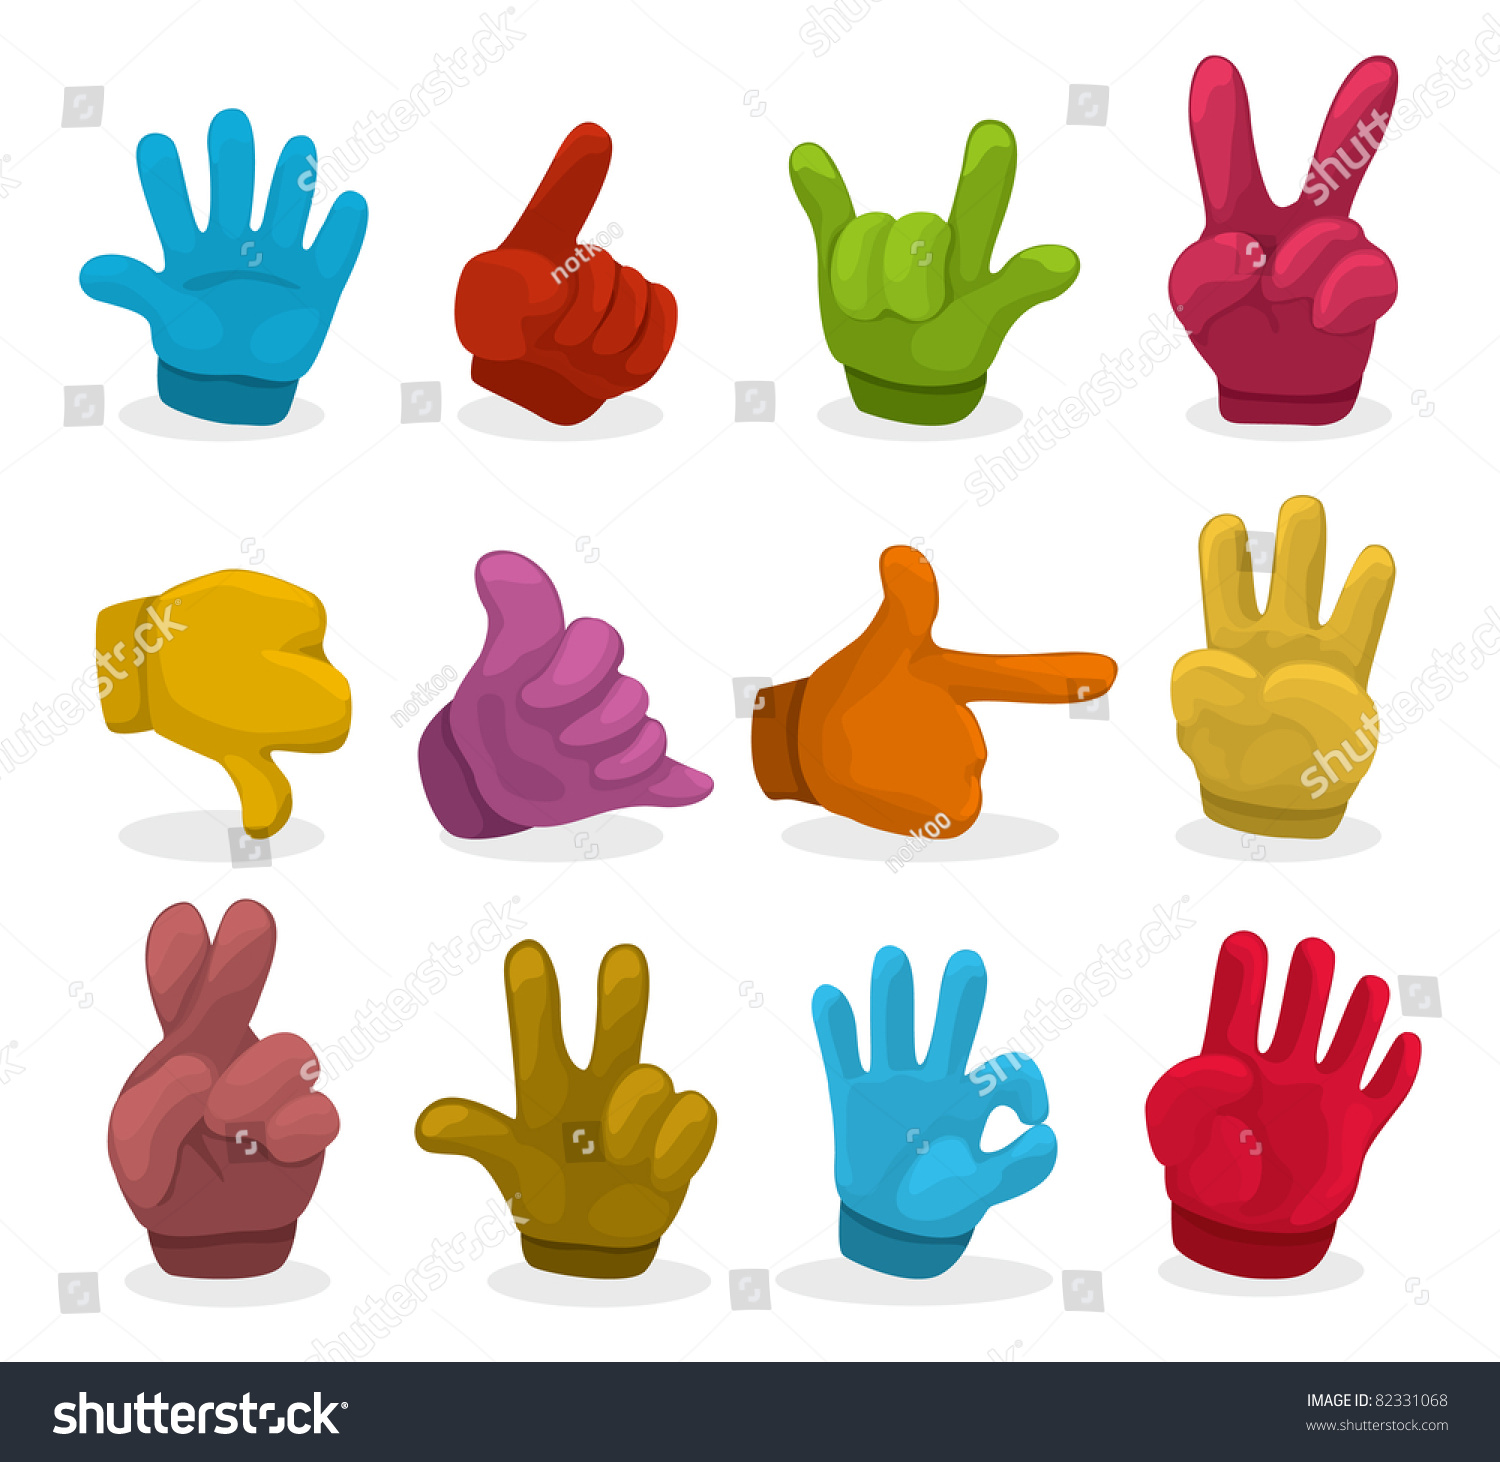 Ладошка с разноцветными пальцами